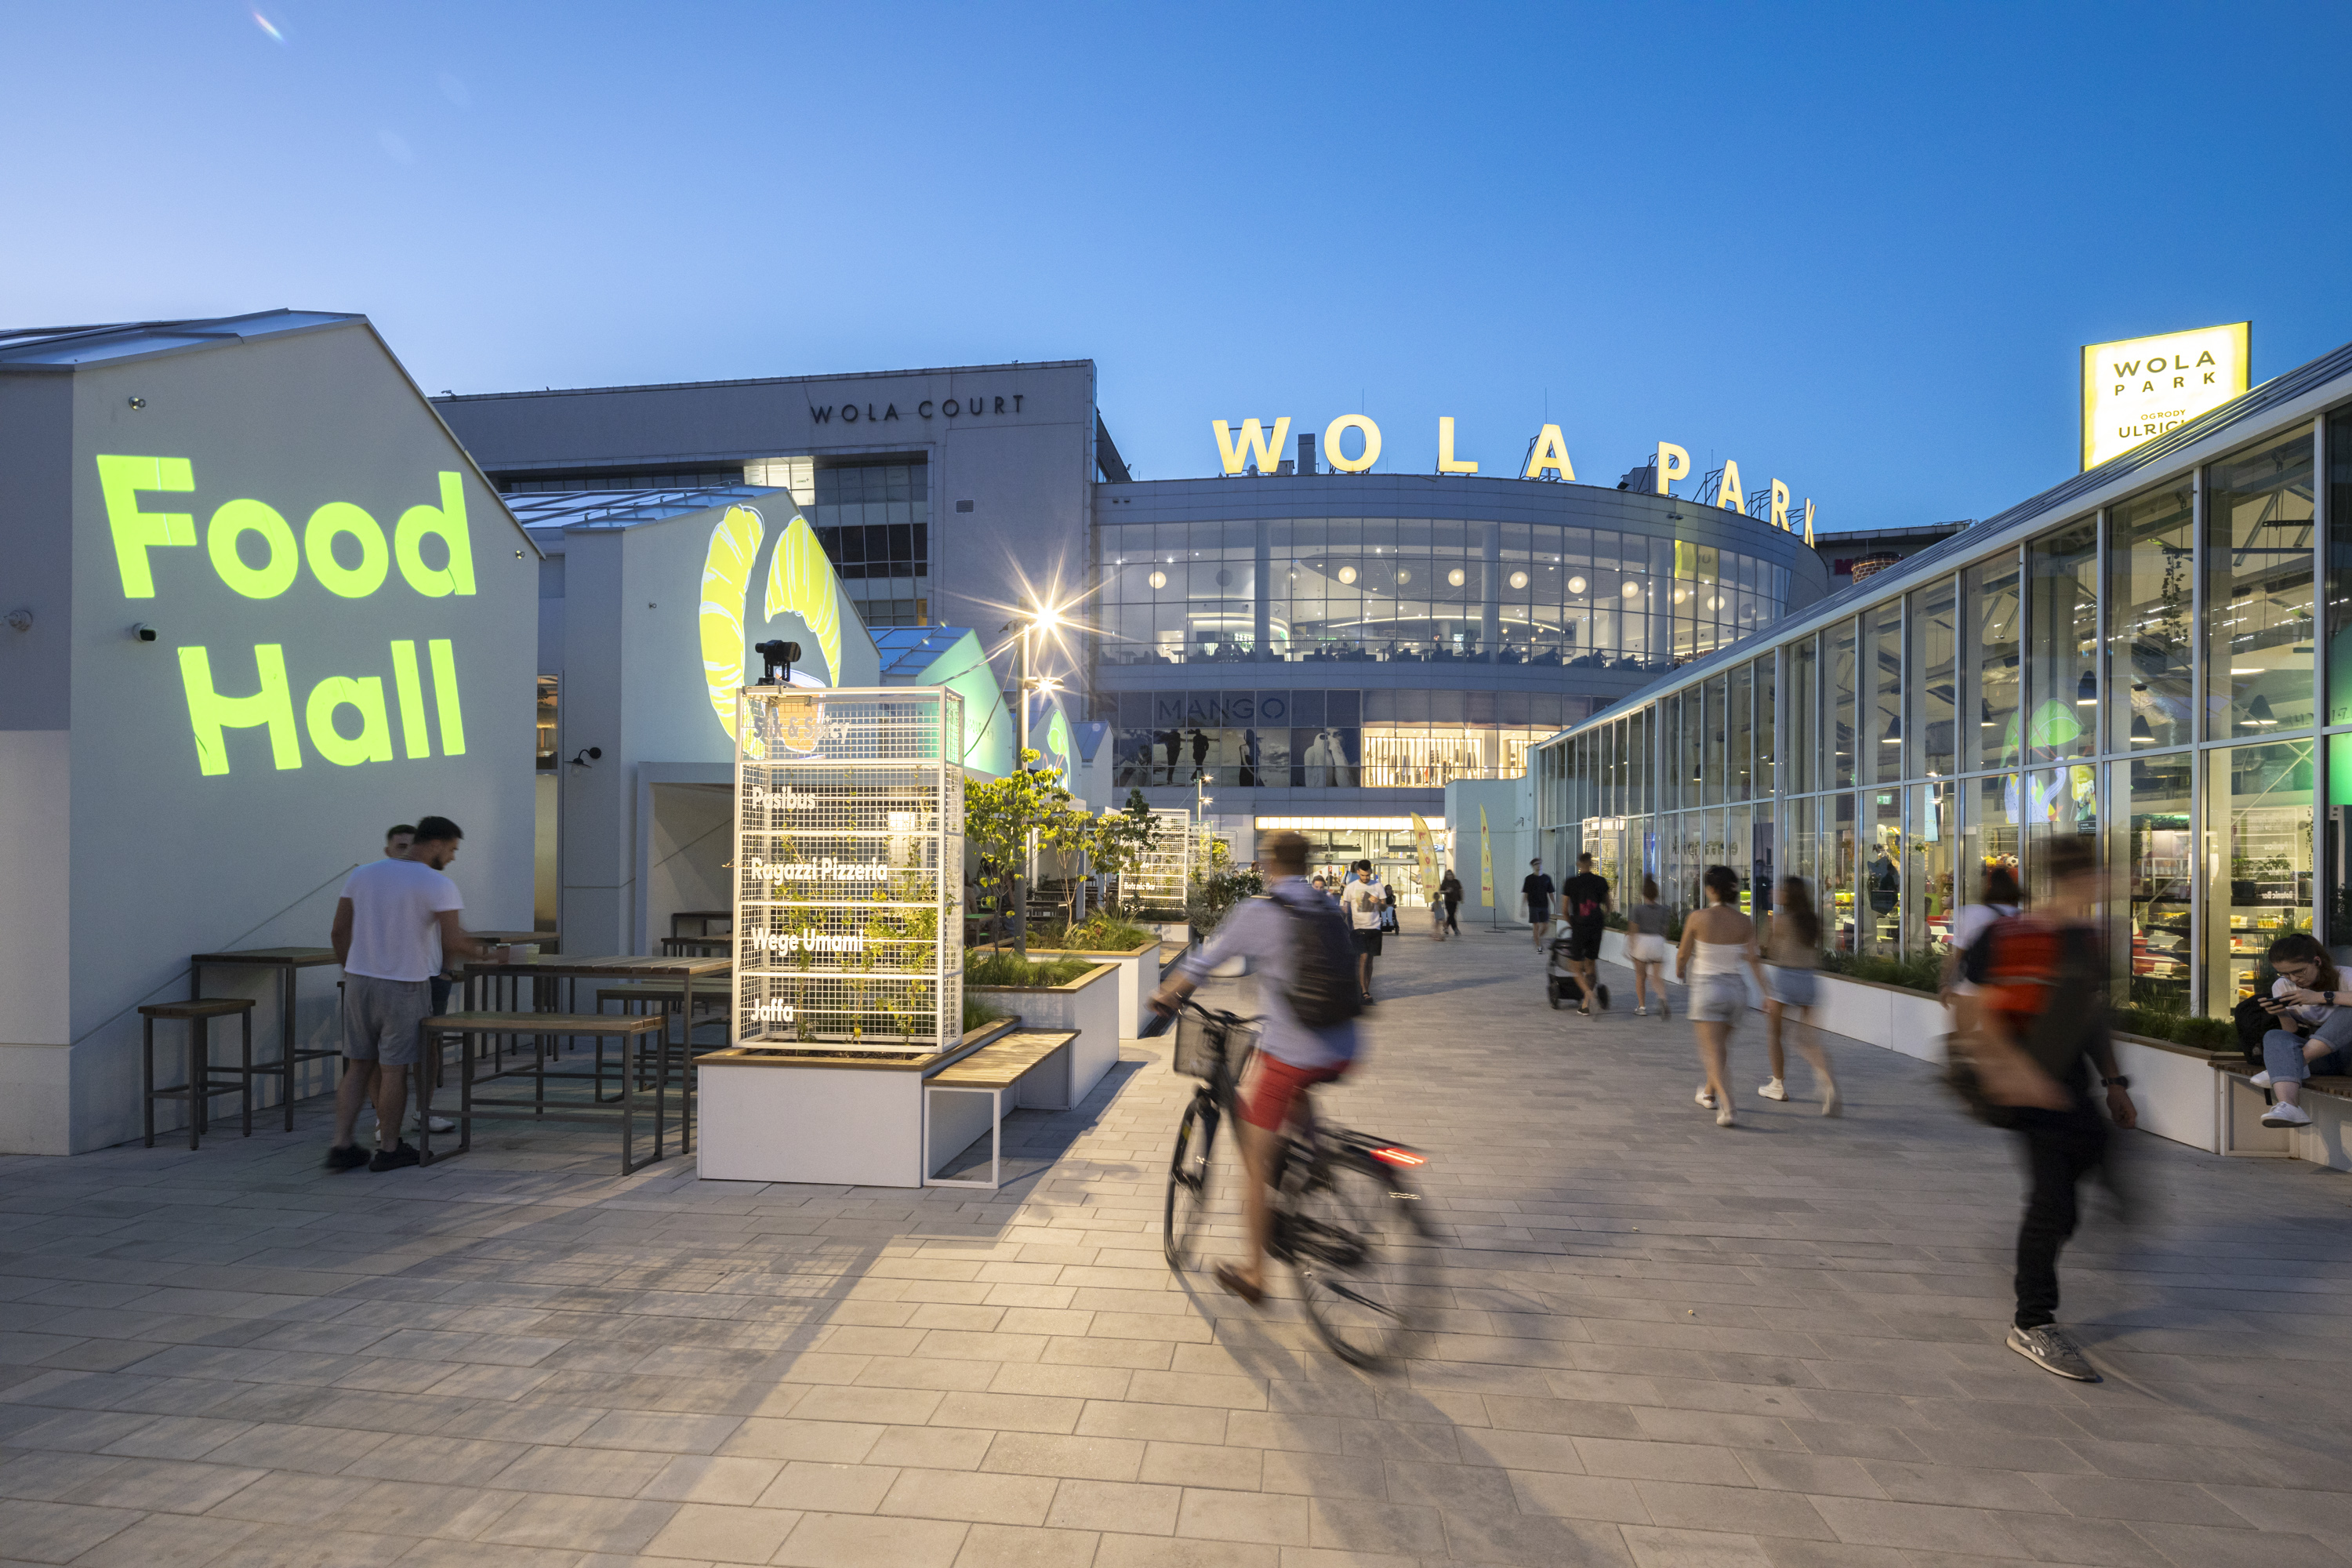 Wola Park este singurul centru comercial din Varșovia care are o piață - Ulrich Park.  Covor de imagine.  El apasă 